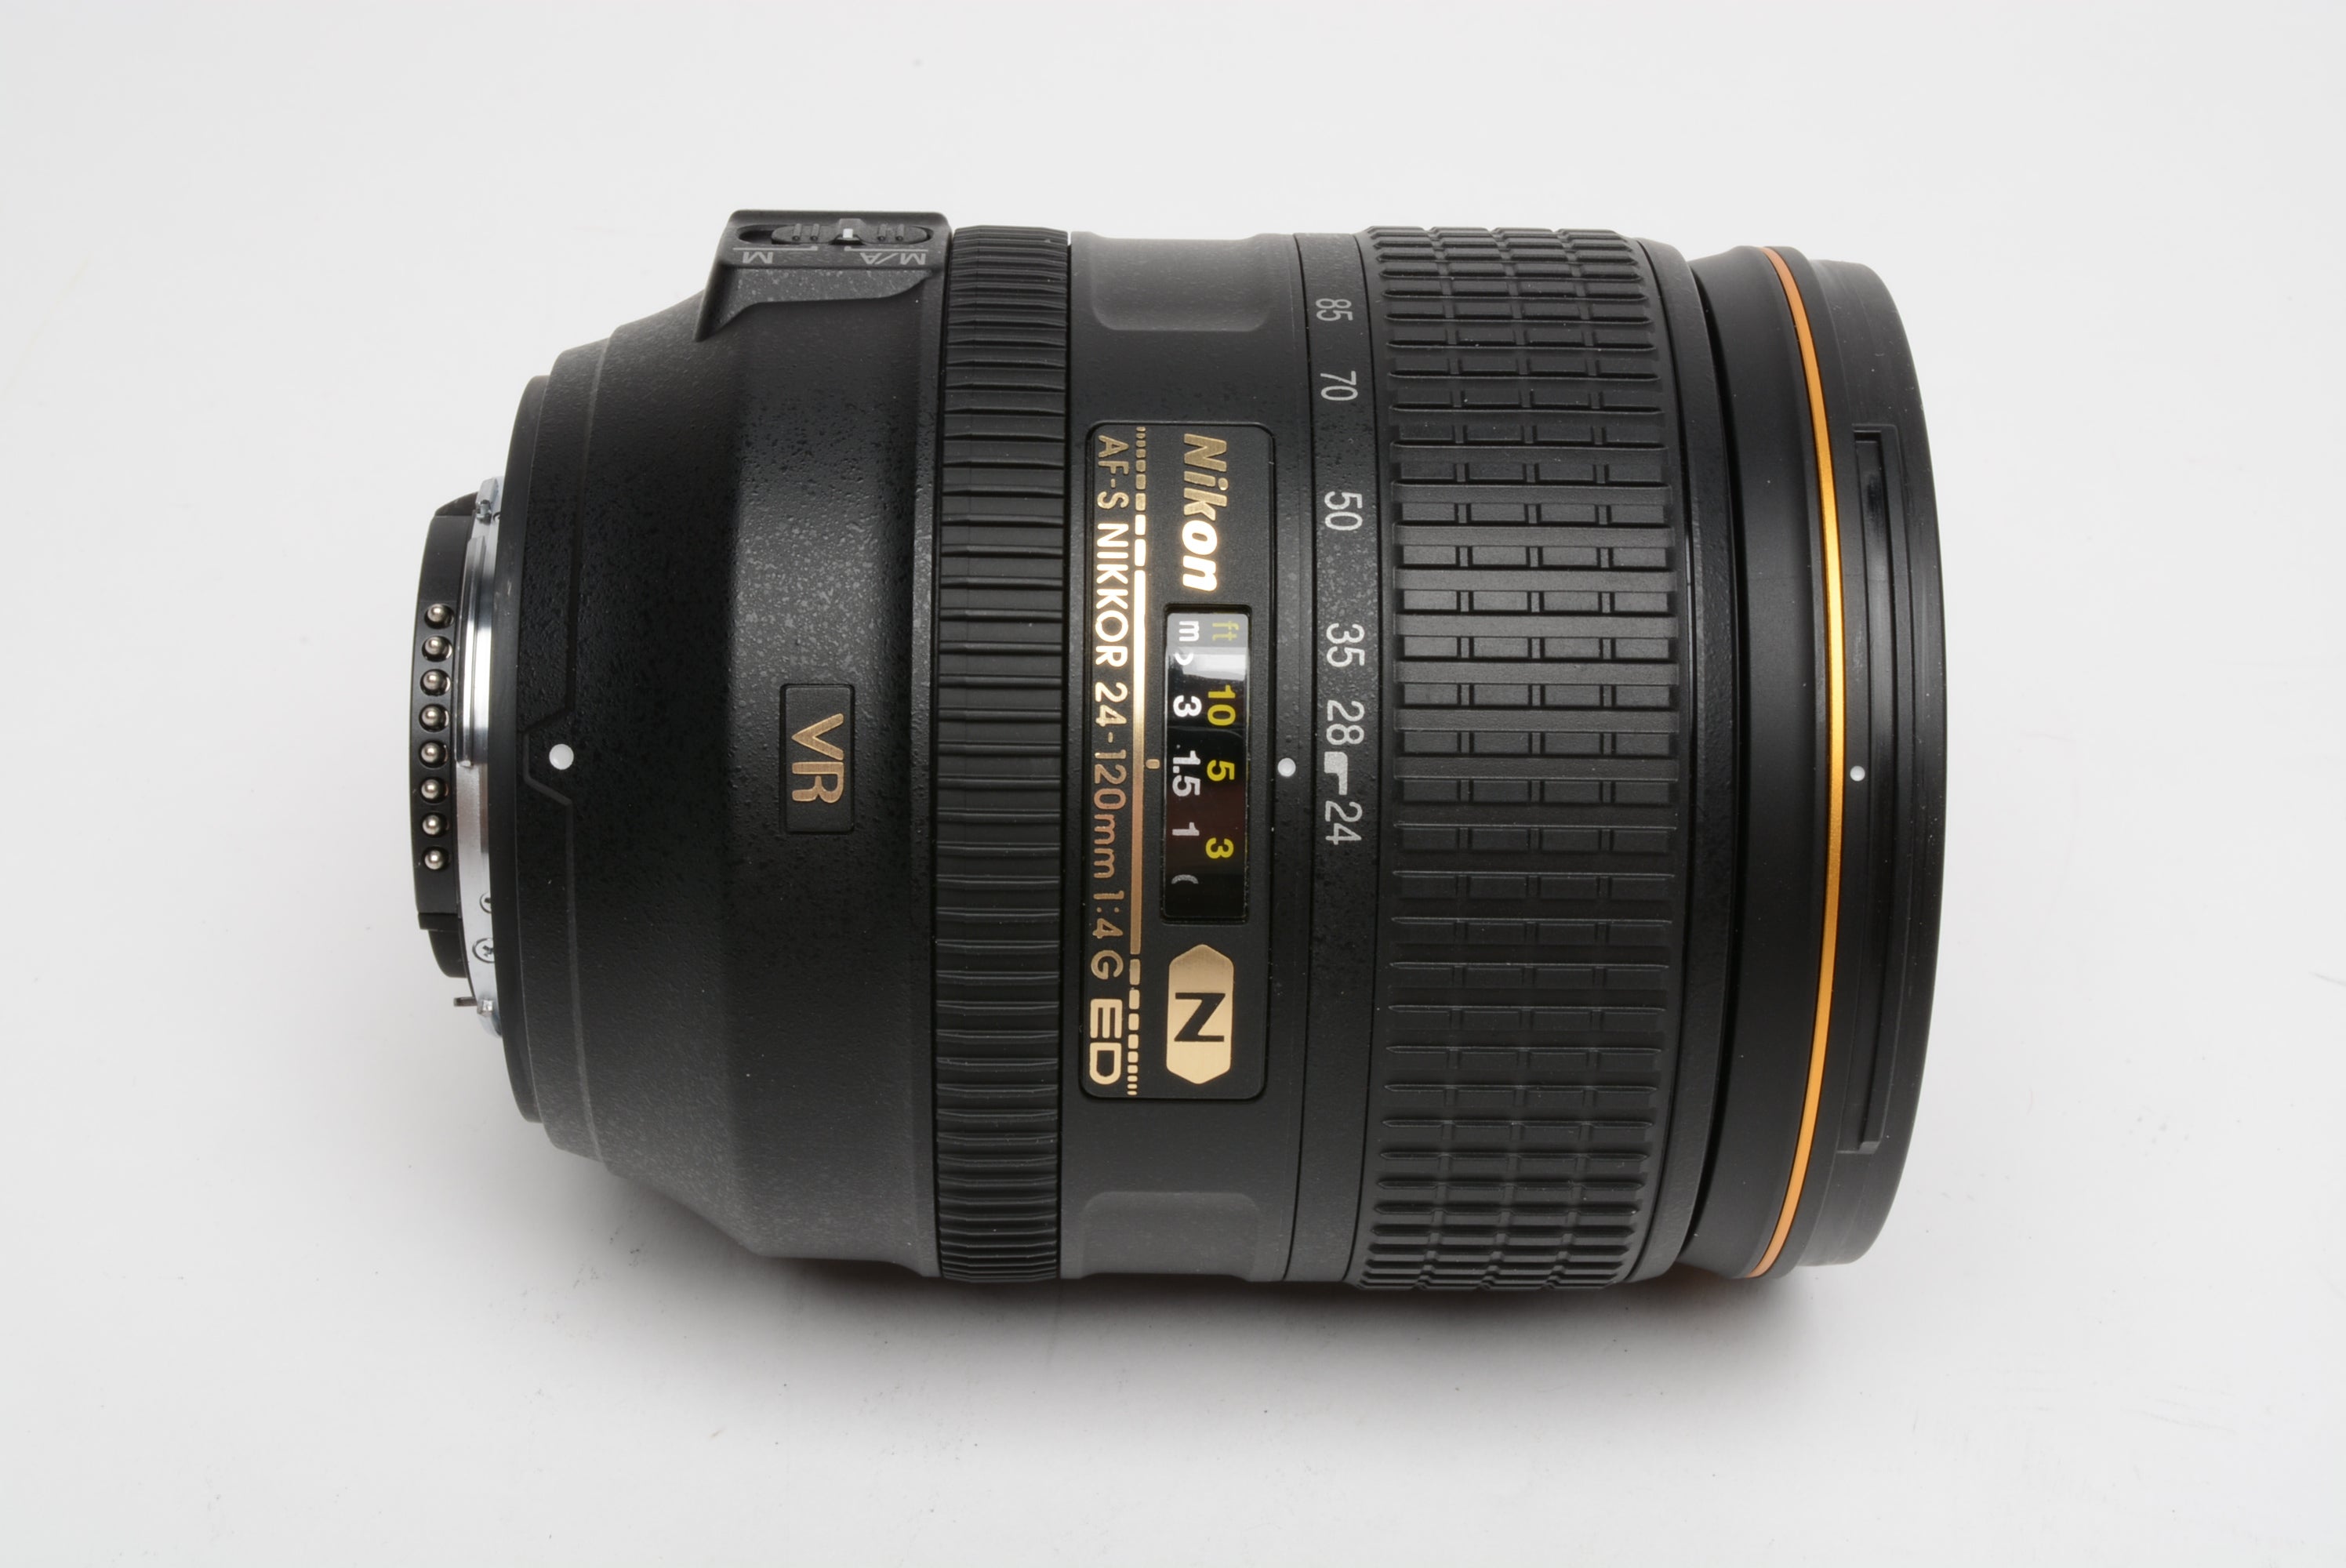 LensCoat Lens Cover for Nikon 24-120 f/3.5/5.6G ED-IF AF-S Nikkor